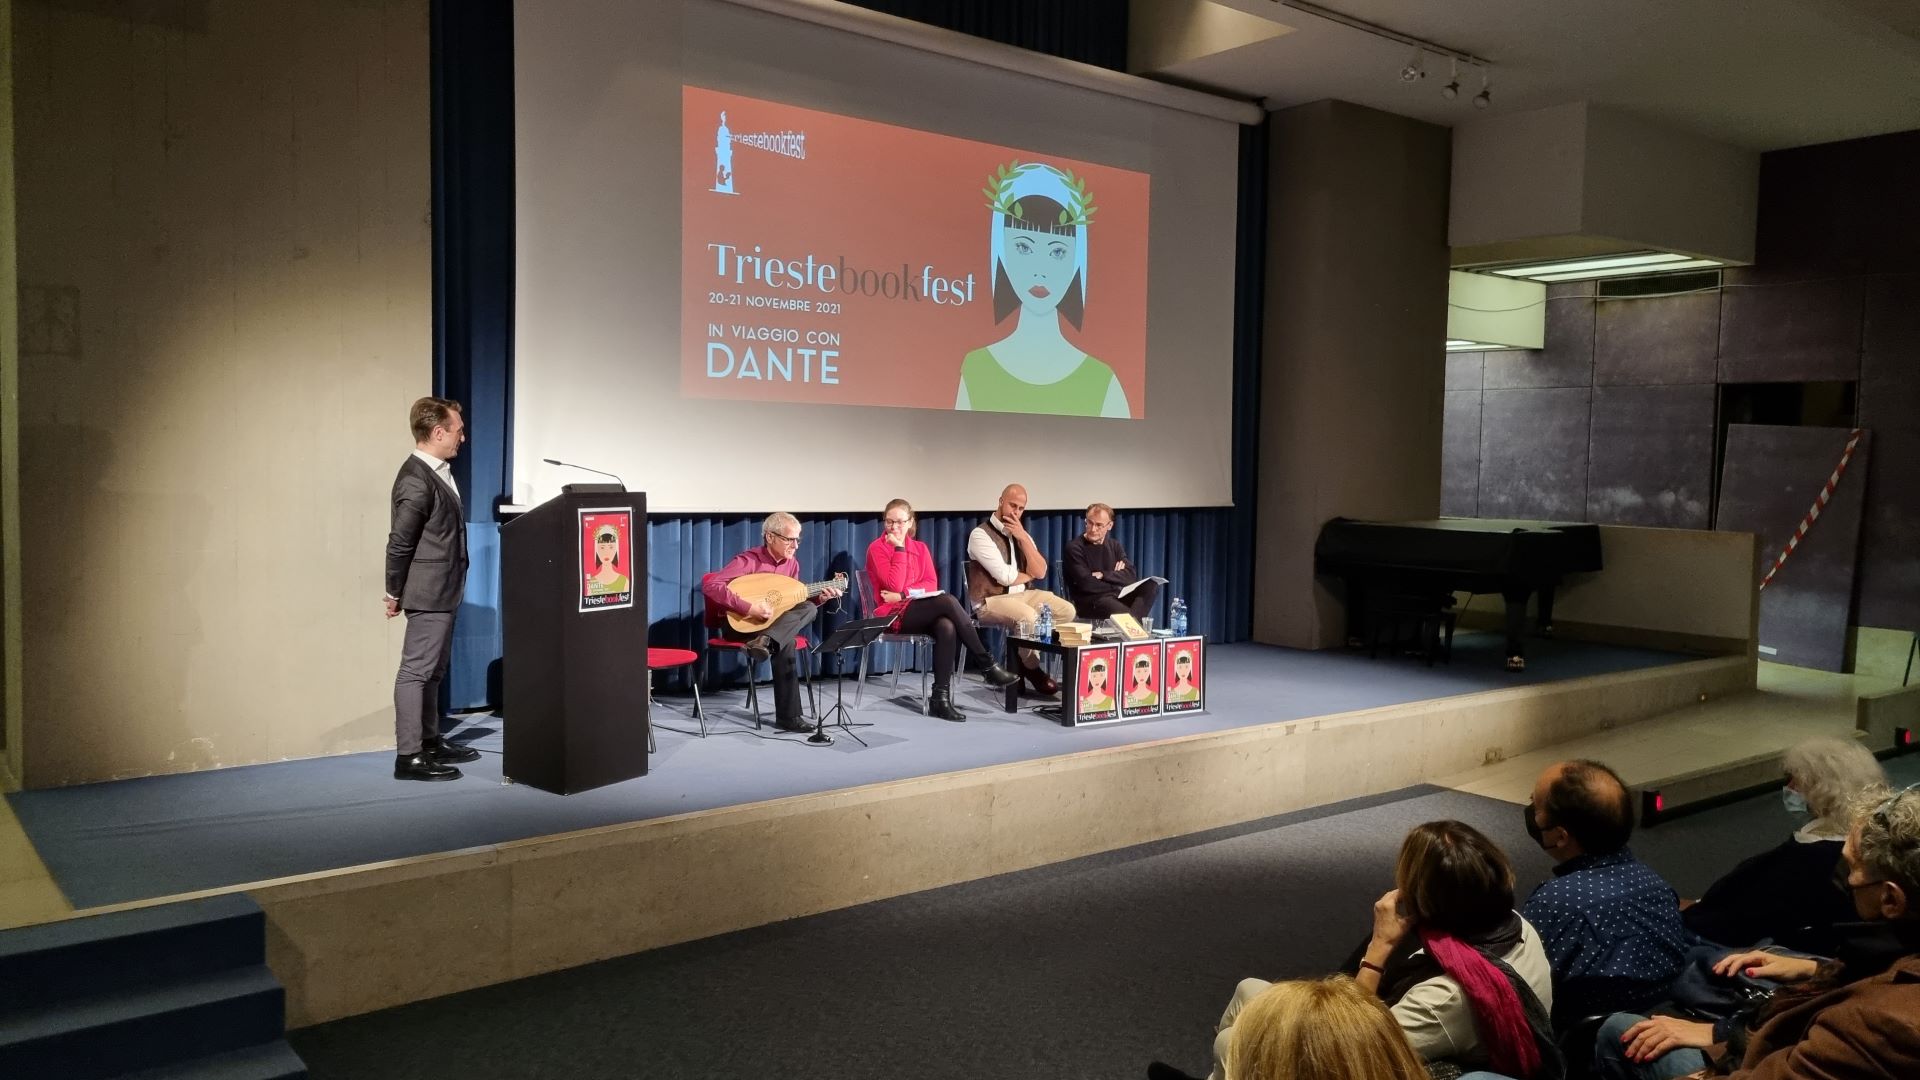 Trieste Book Fest 2021 in viaggio con Dante 1 7 min